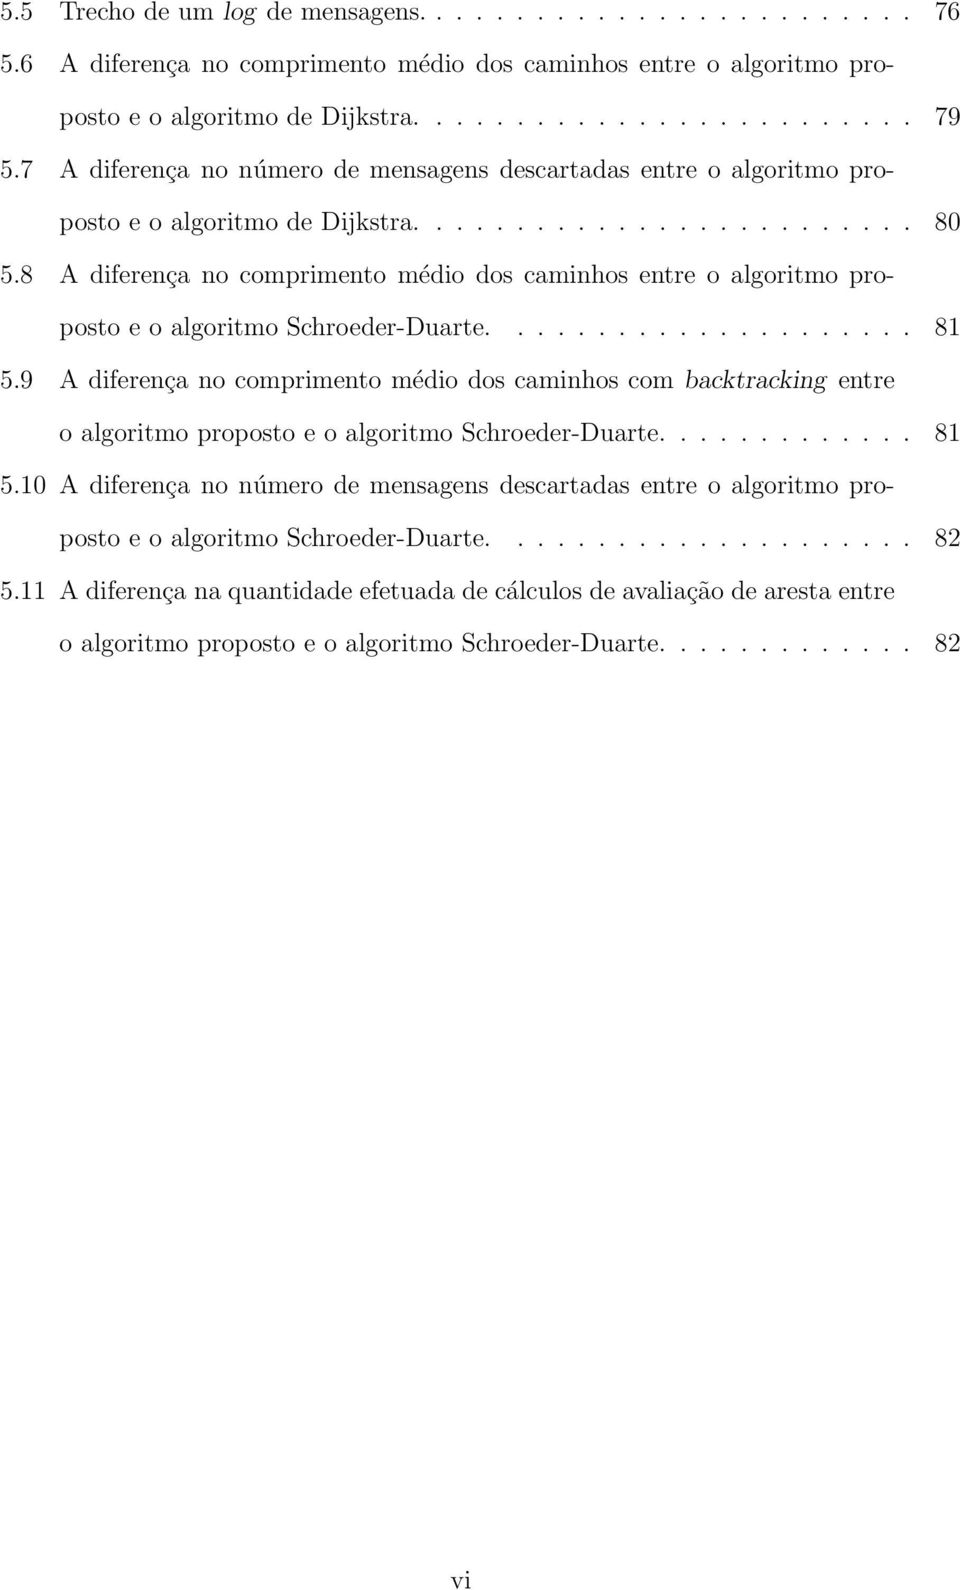 8 A diferença no comprimento médio dos caminhos entre o algoritmo proposto e o algoritmo Schroeder-Duarte..................... 81 5.